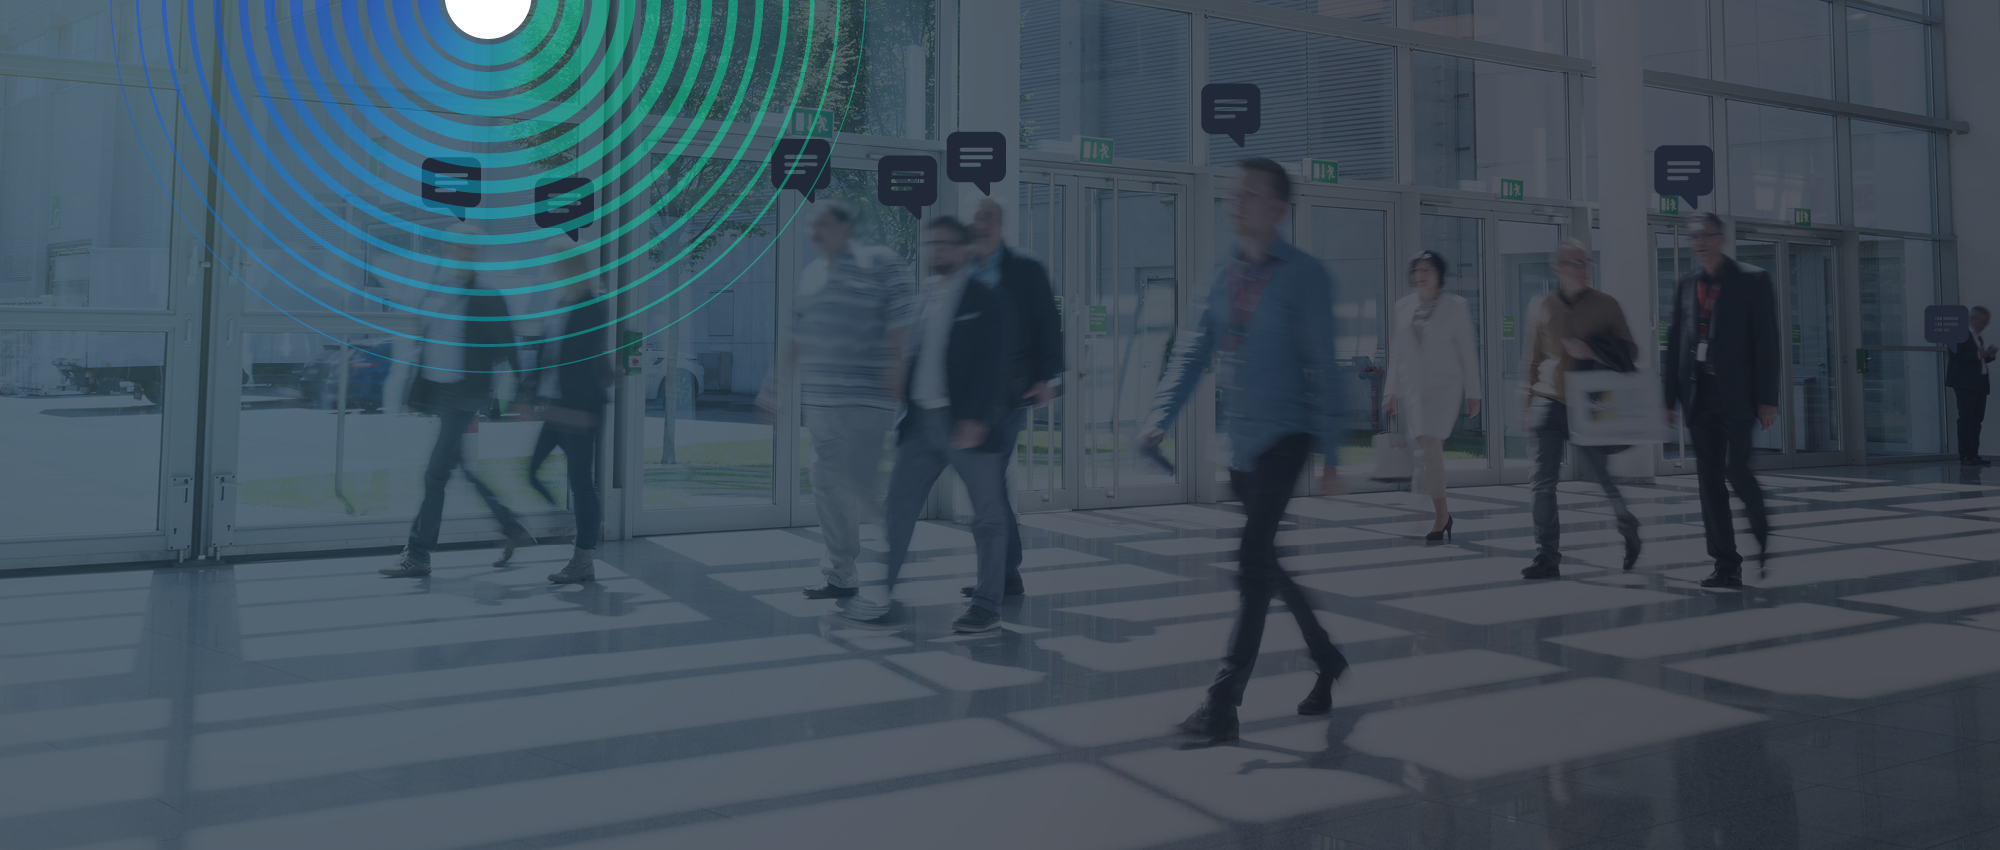 Diapositive qui illustre l'appareil qui fait le comptage des gens dans un hall de centre commercial. Slide that illustrates the device that counts people in a mall lobby.